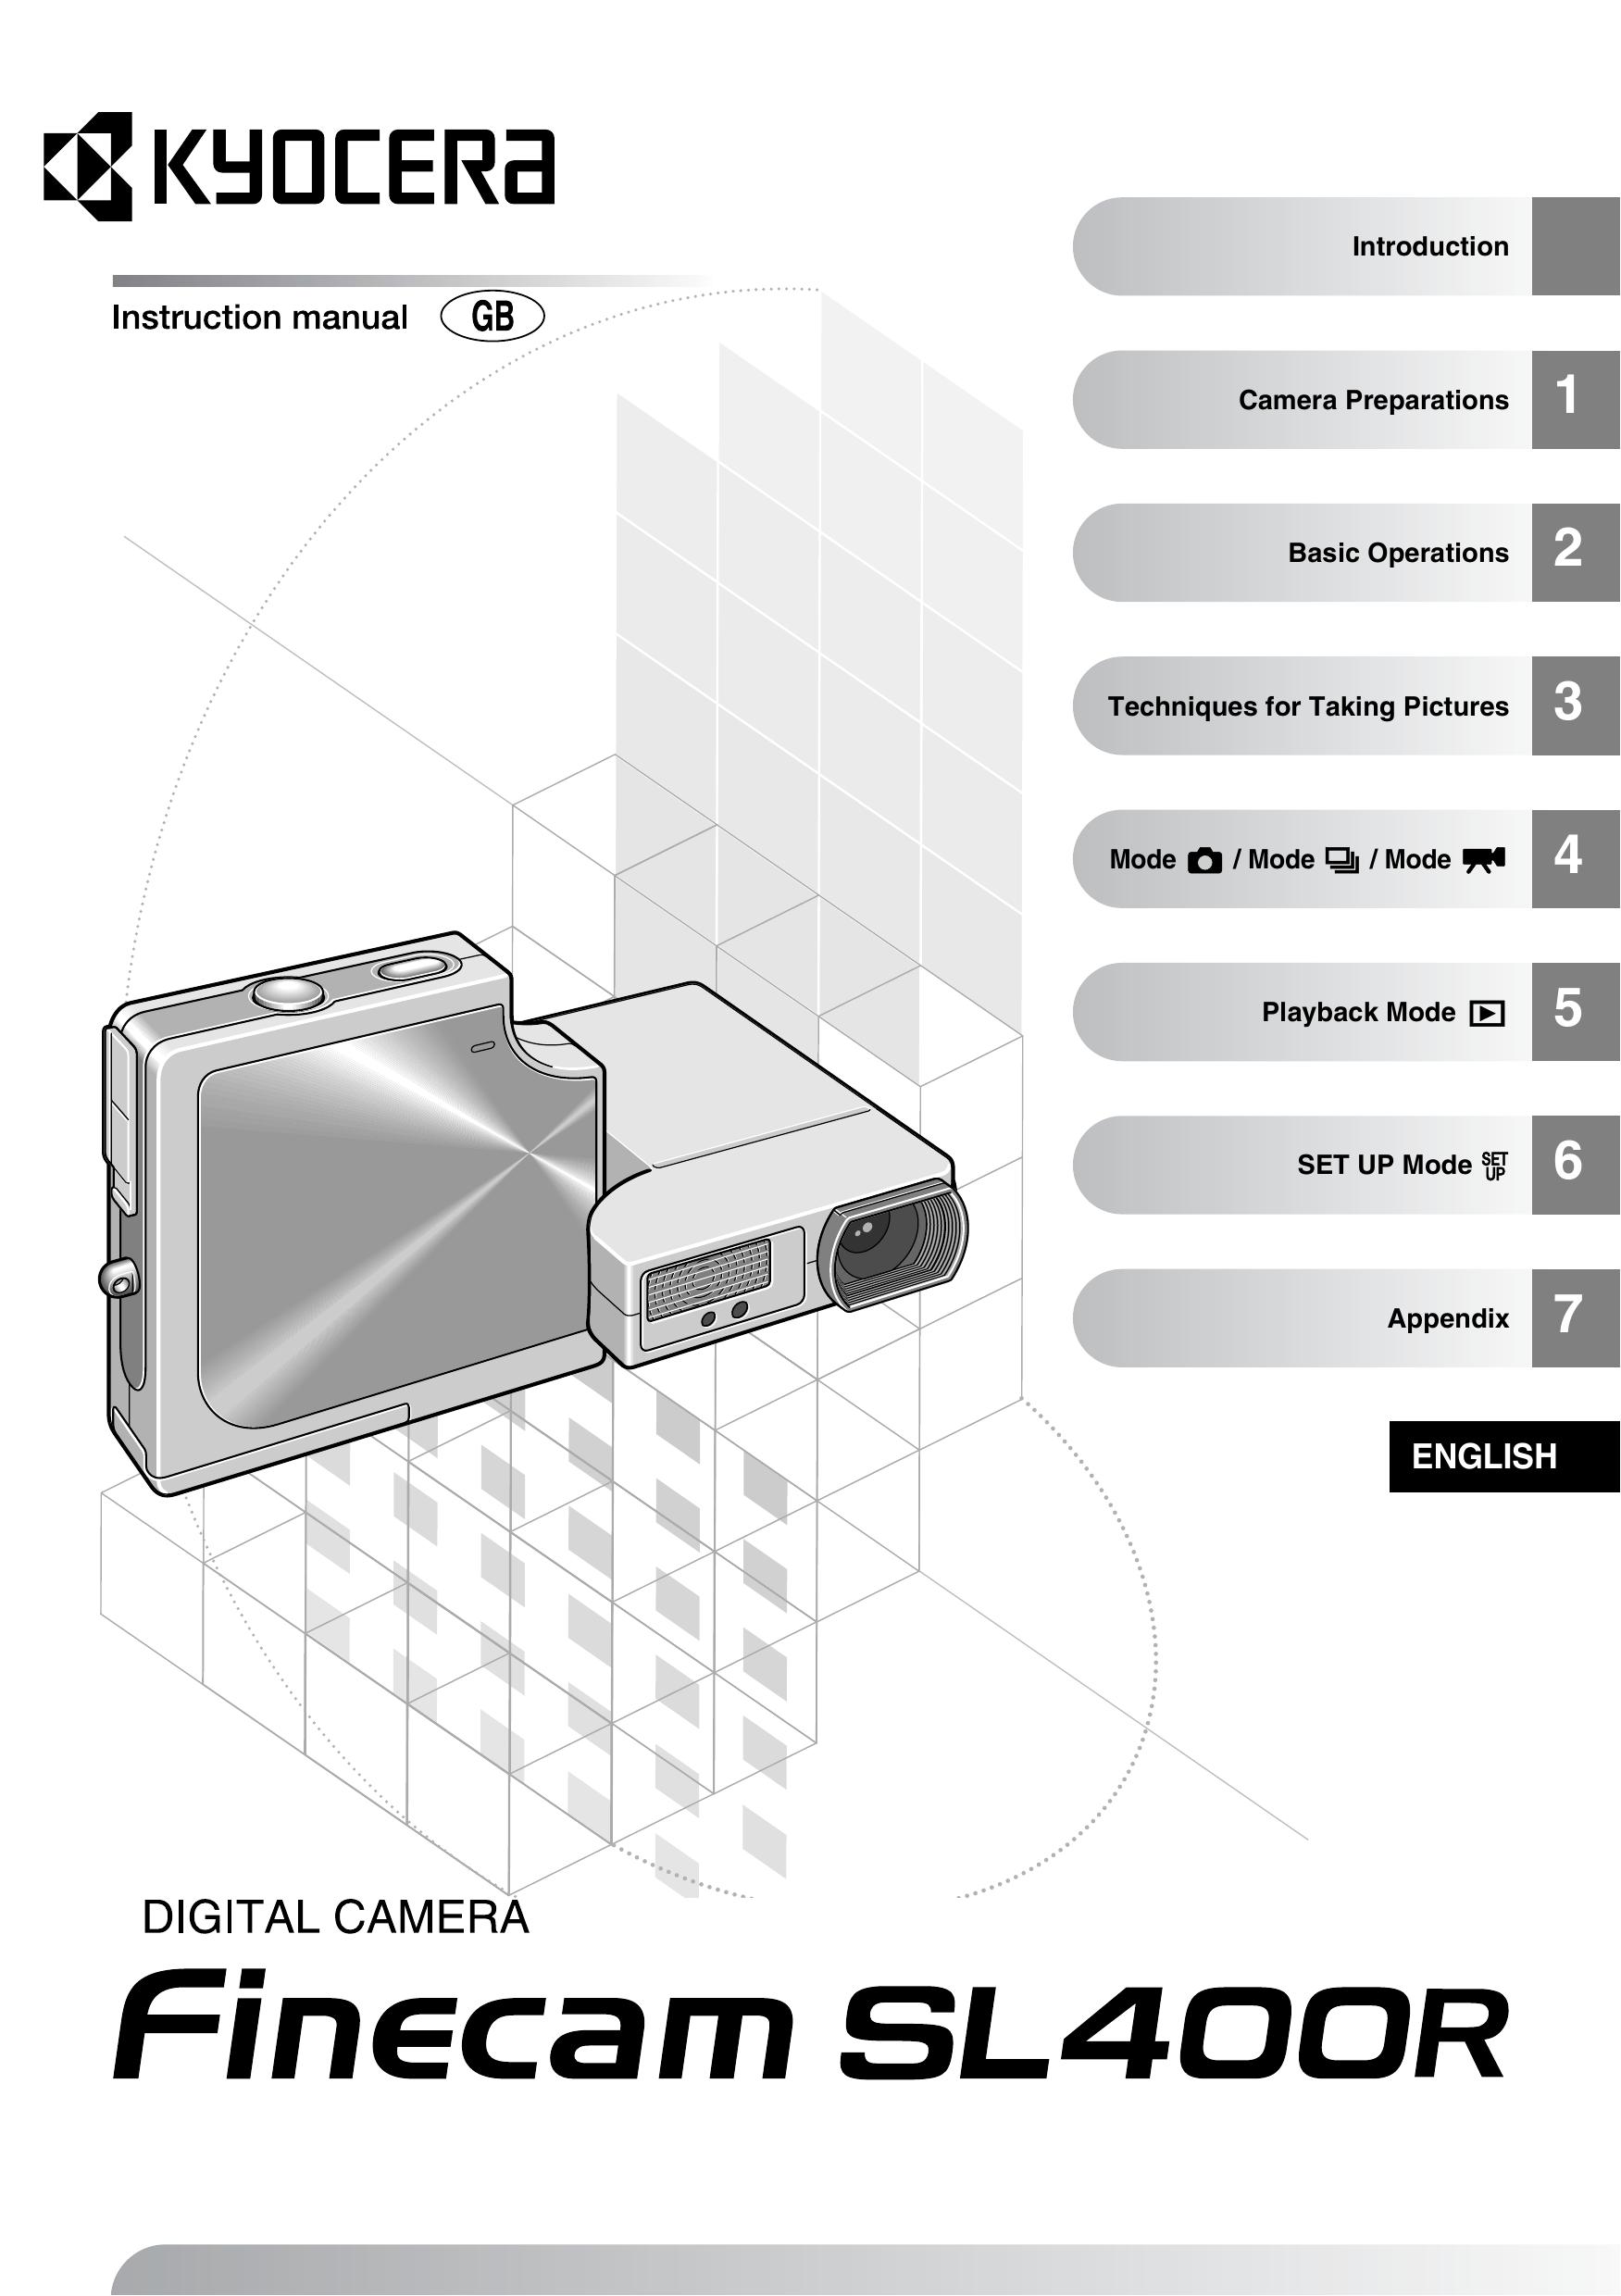 Kyocera SL400R Digital Camera User Manual